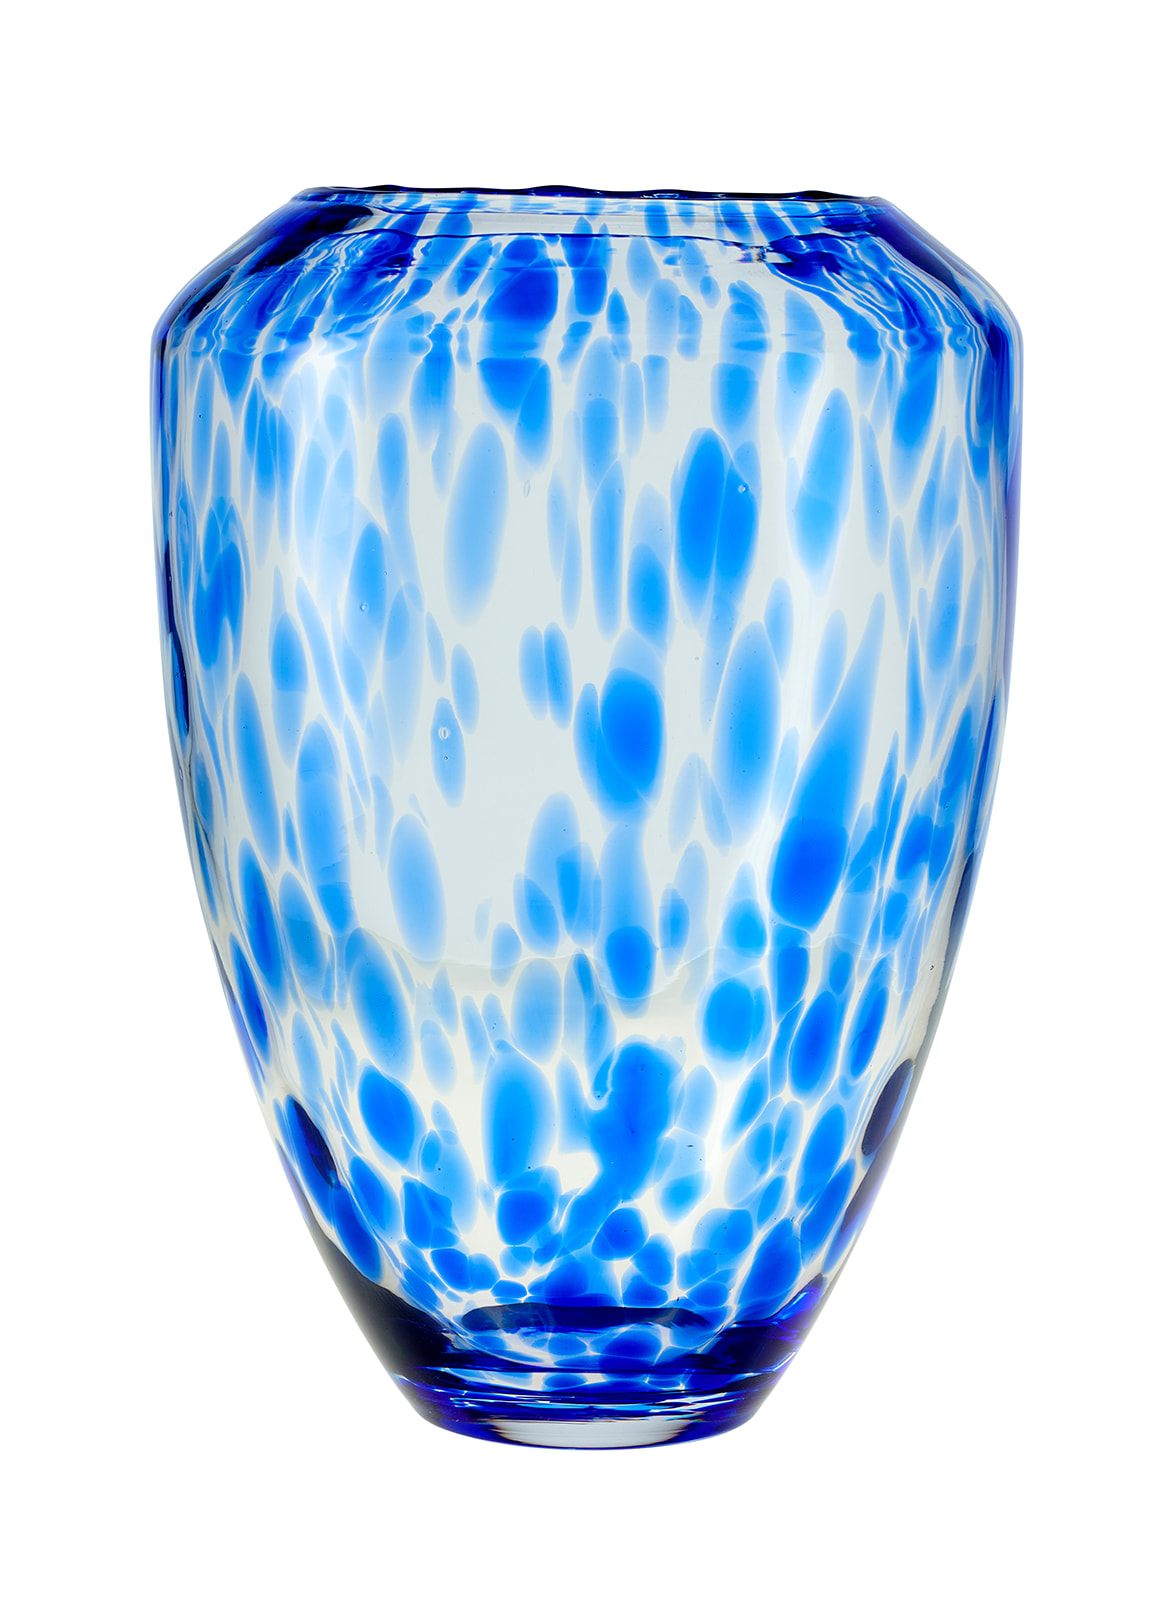 http://www.bluerosepottery.com/mm5/graphics/00000001/9/BlueRosePottery_17_8883_Confetti_Cobalt_Vase_492_websize.jpg